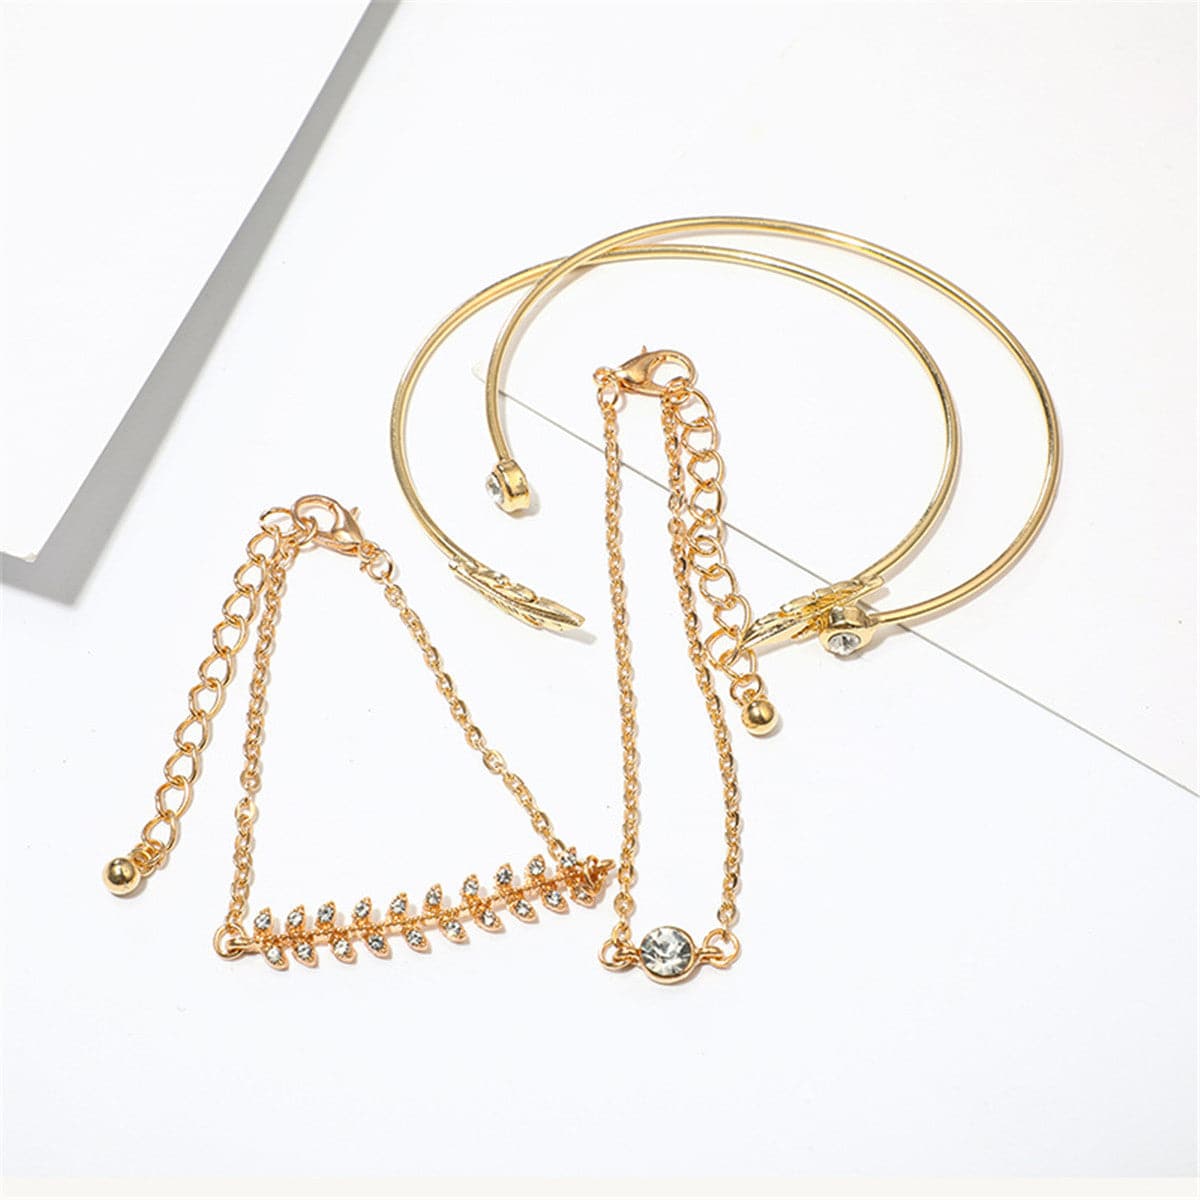 Cubic Zirconia & 18K Gold-Plated Leaf Charm Bracelet Set